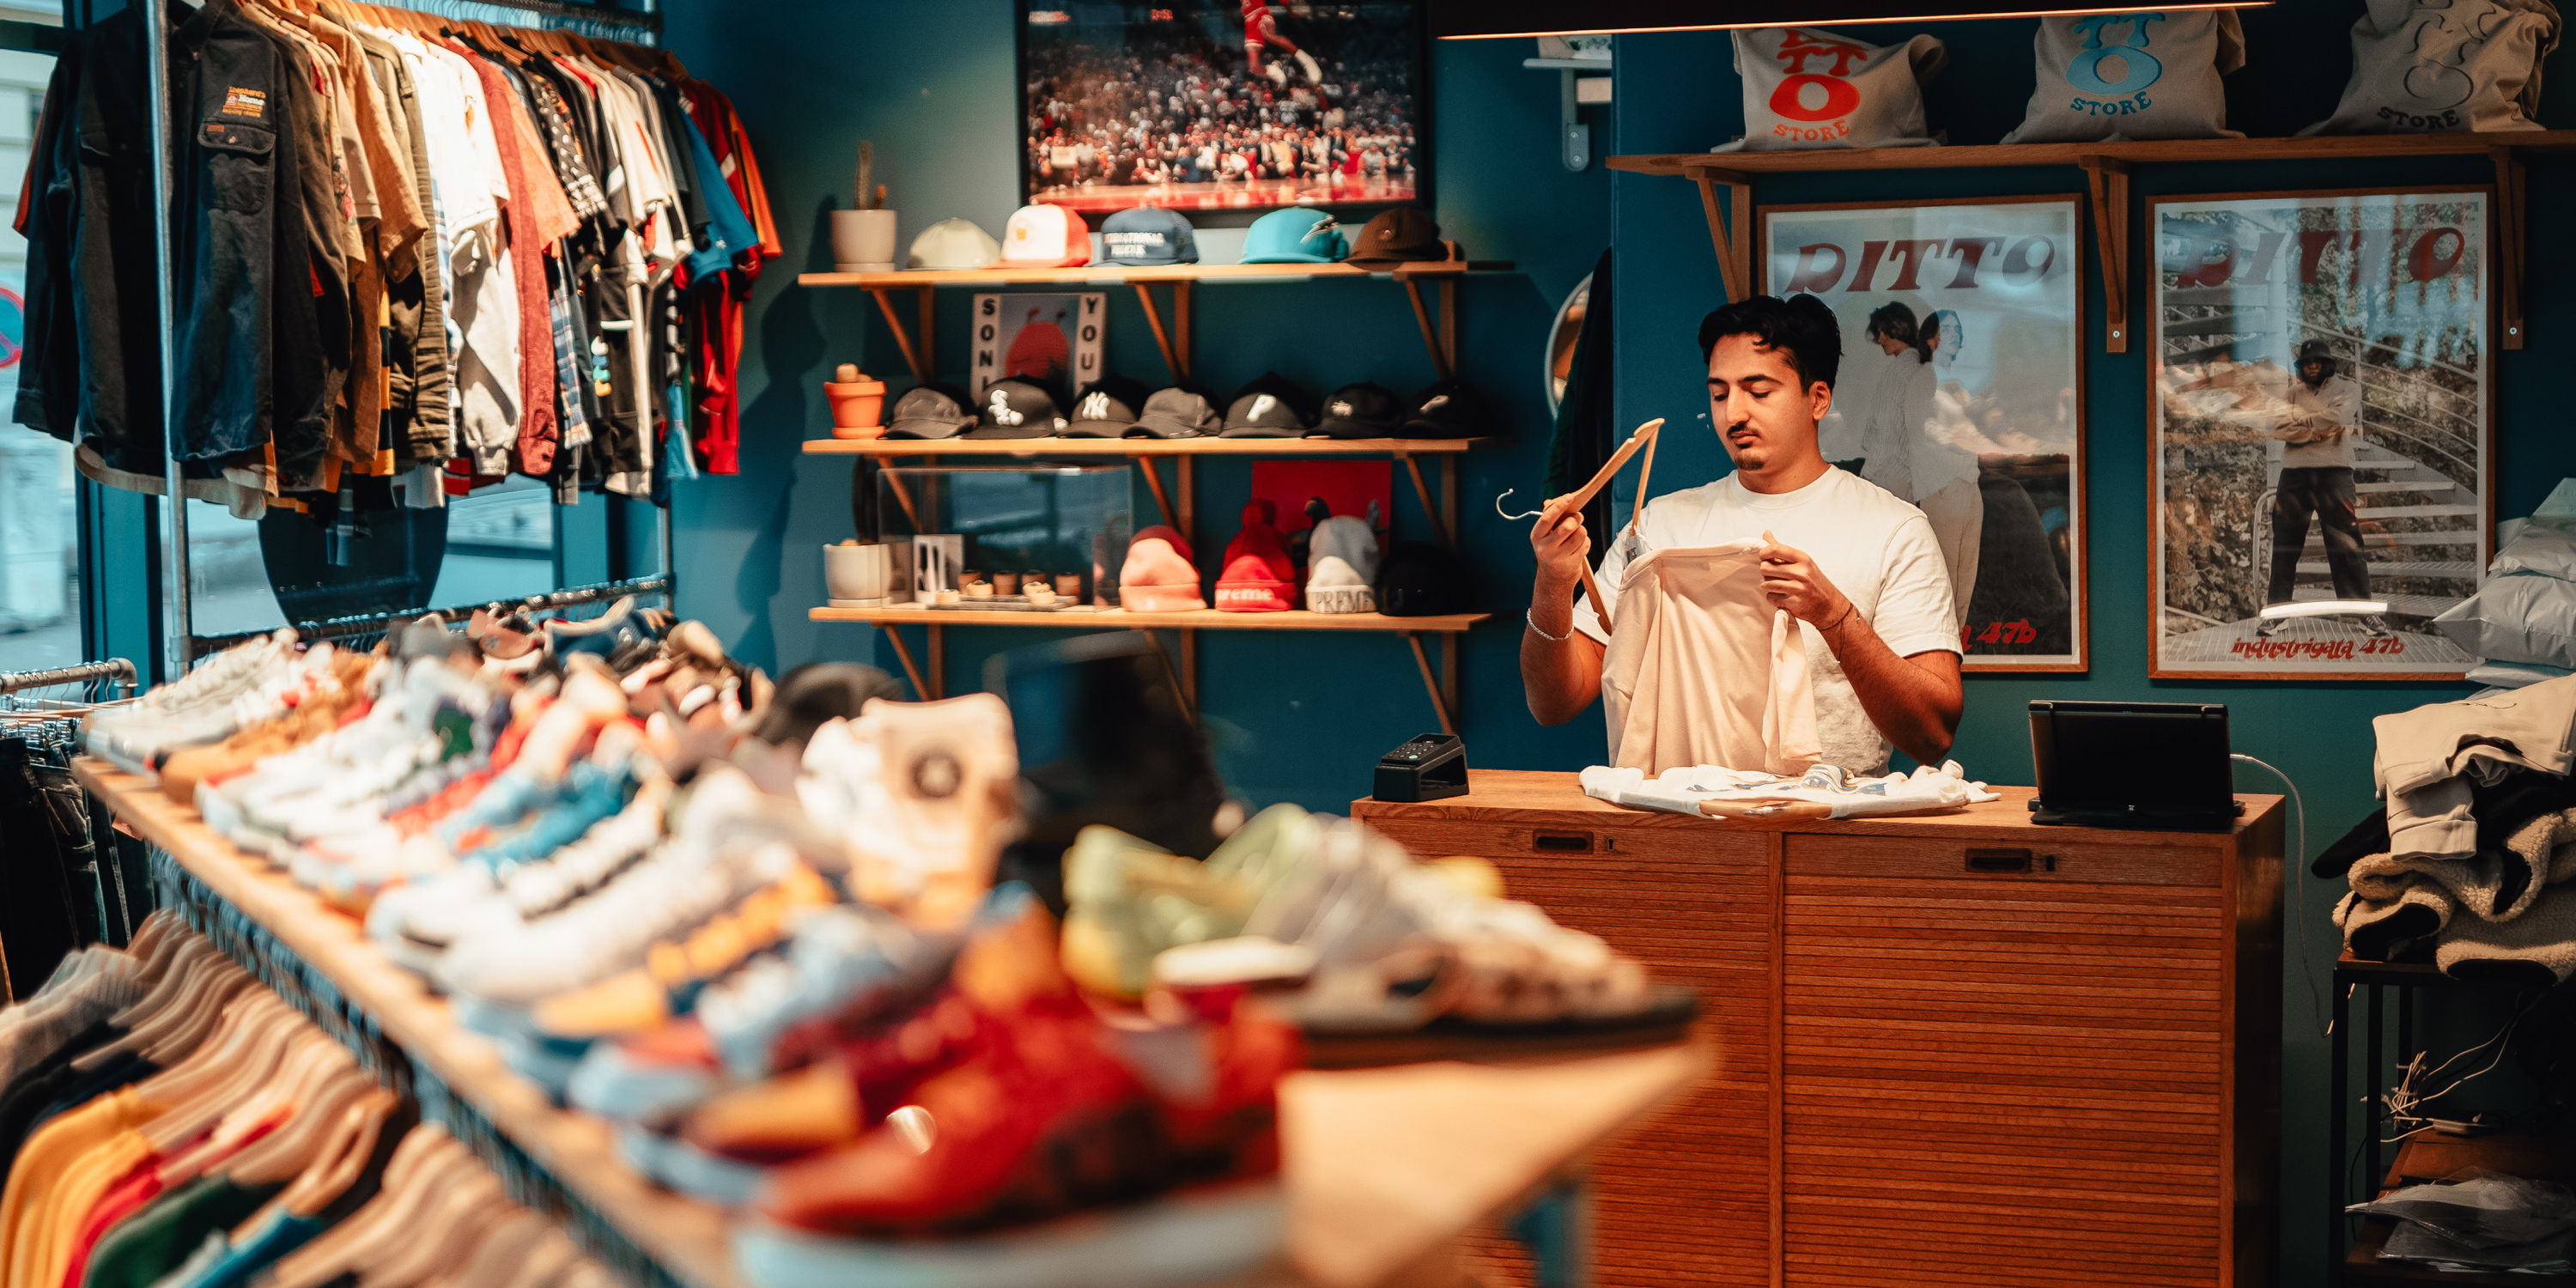 Klær og sko på hyller i en butikk, med en mann som står i kassen og bretter klær